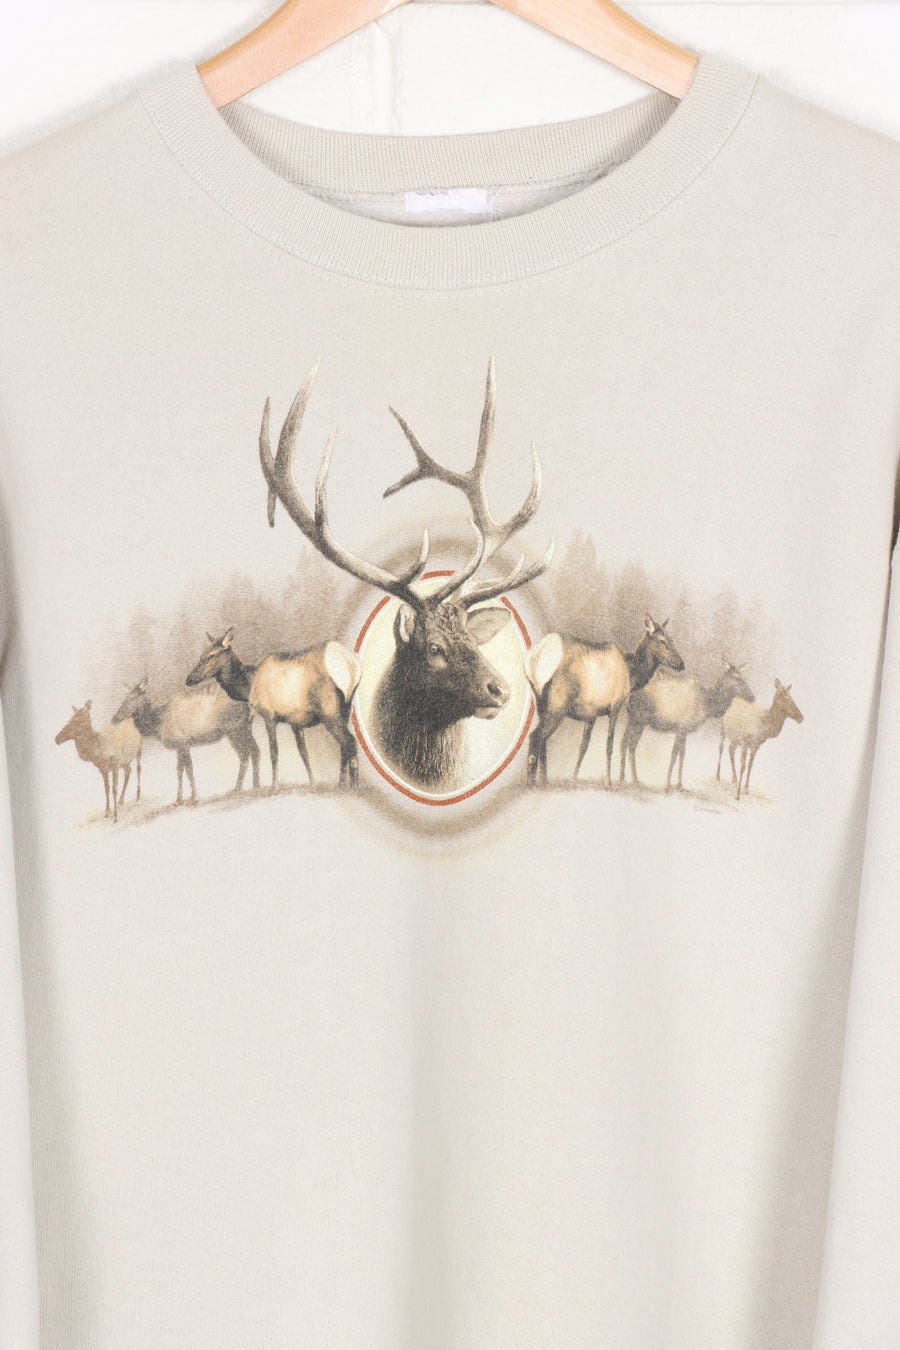 Stone Deer Antlers Animal Sweatshirt (L)